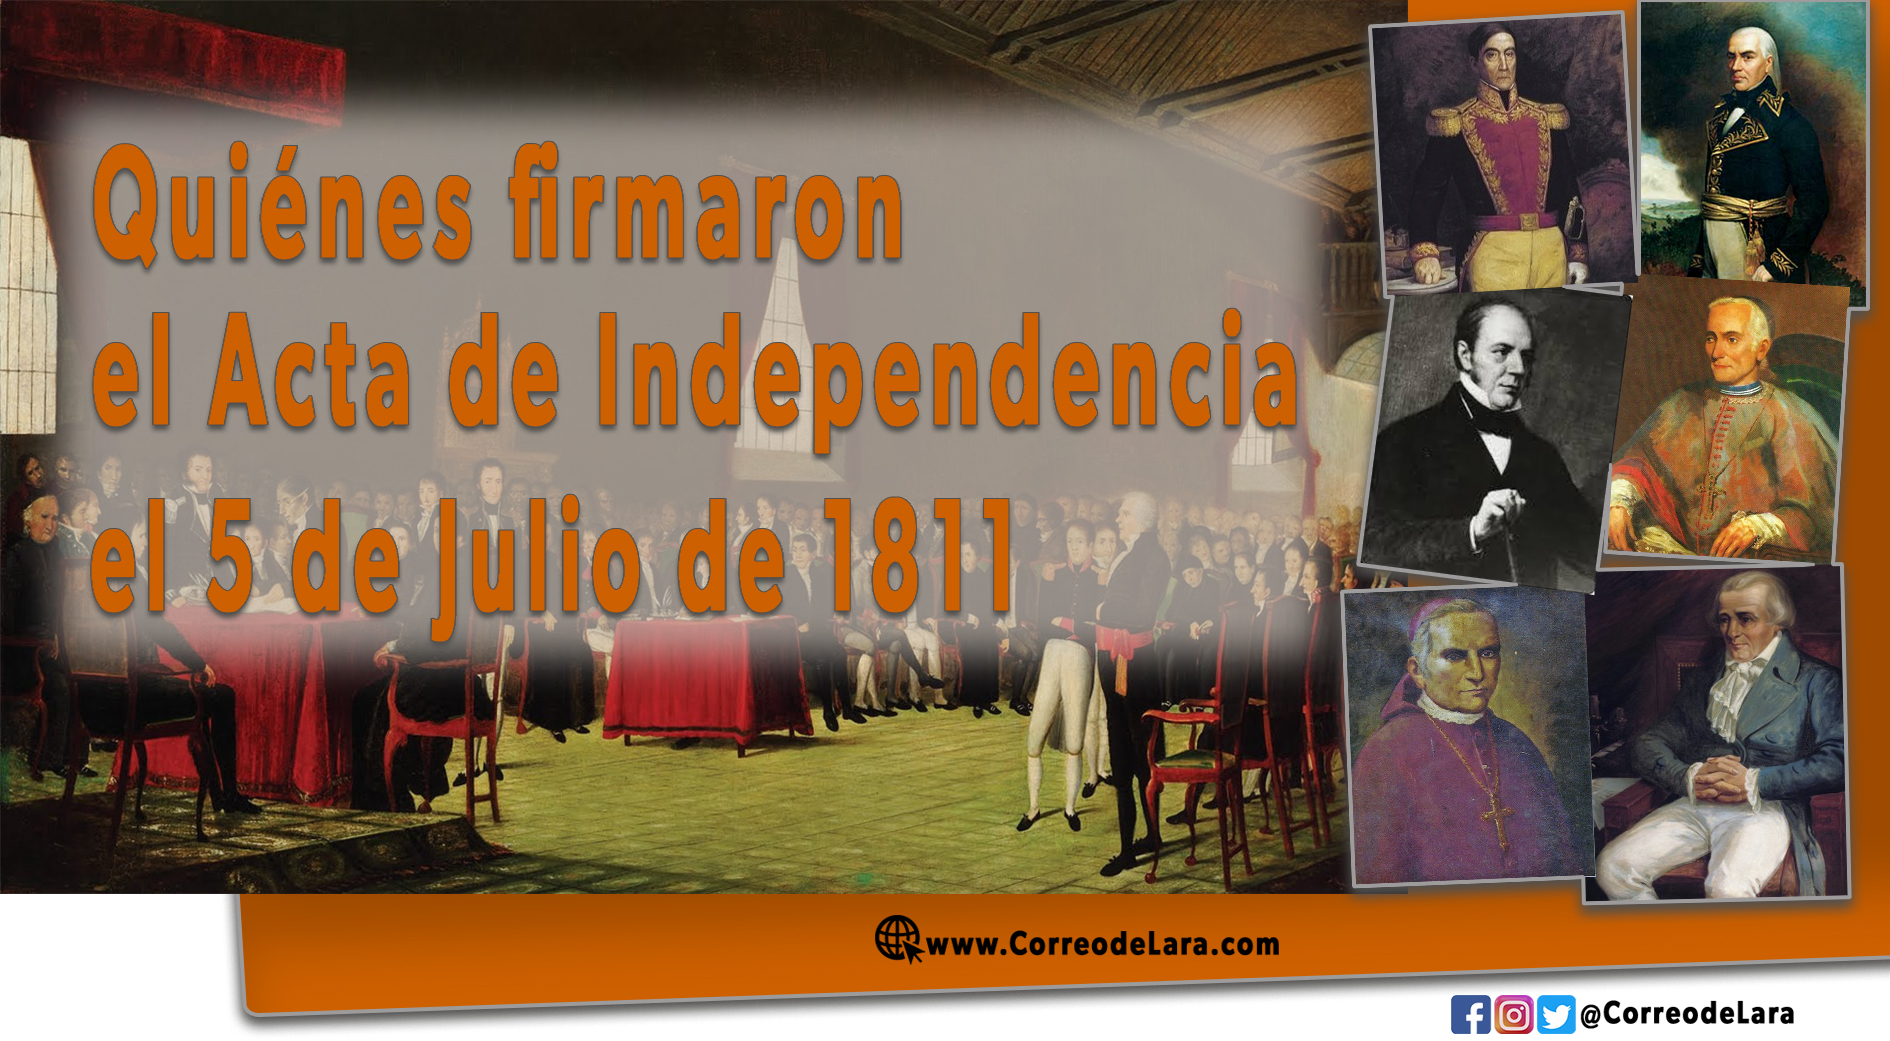 qui-nes-firmaron-el-acta-de-independencia-el-5-de-julio-de-1811